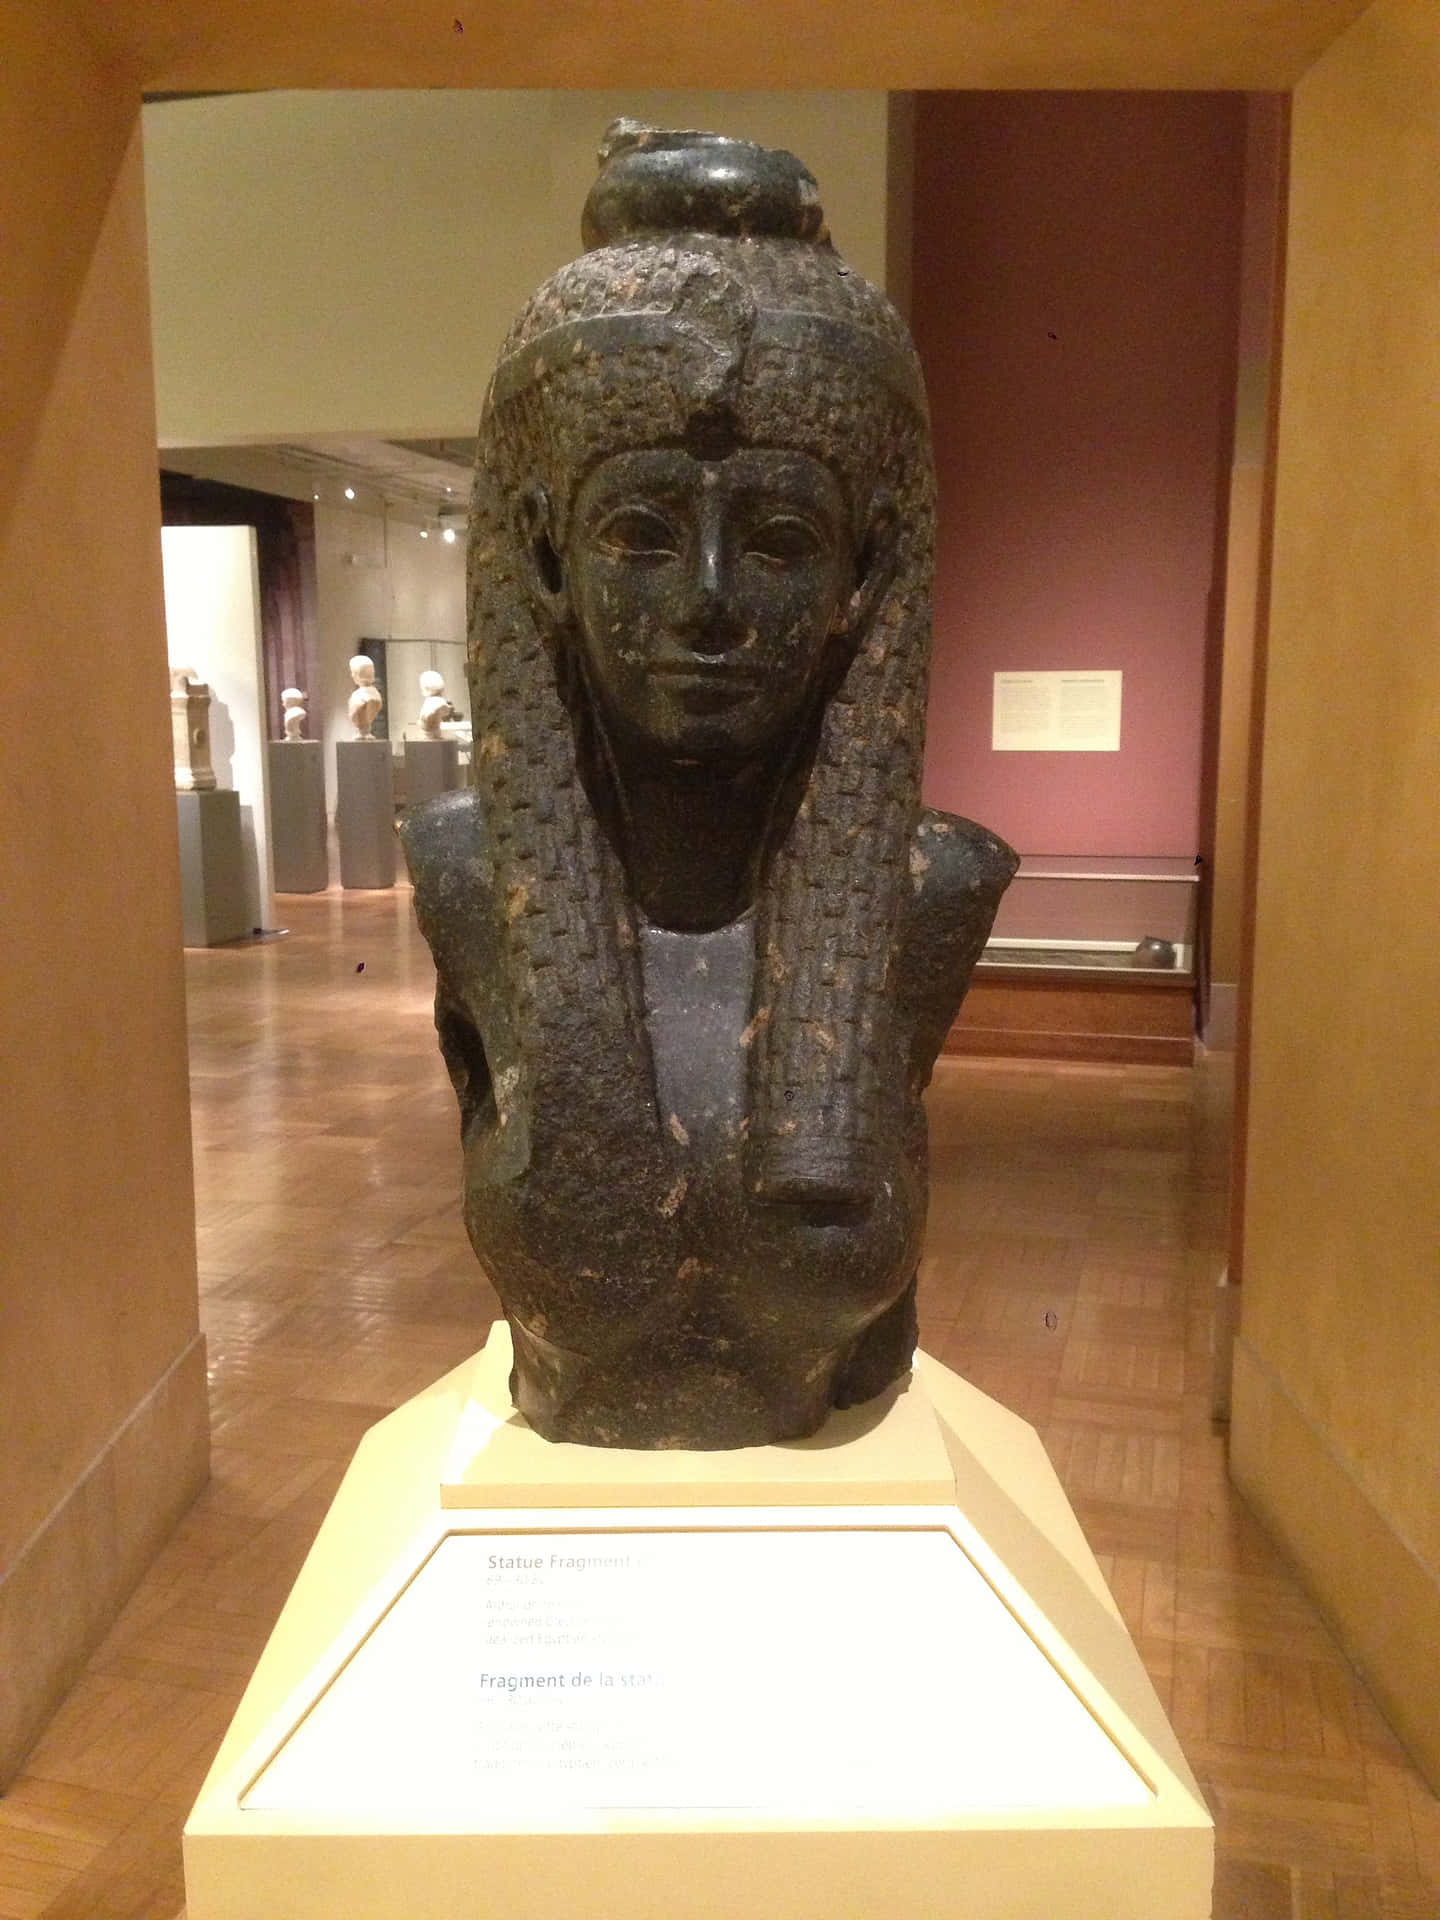 The last Pharaoh of Ancient Egypt, Cleopatra